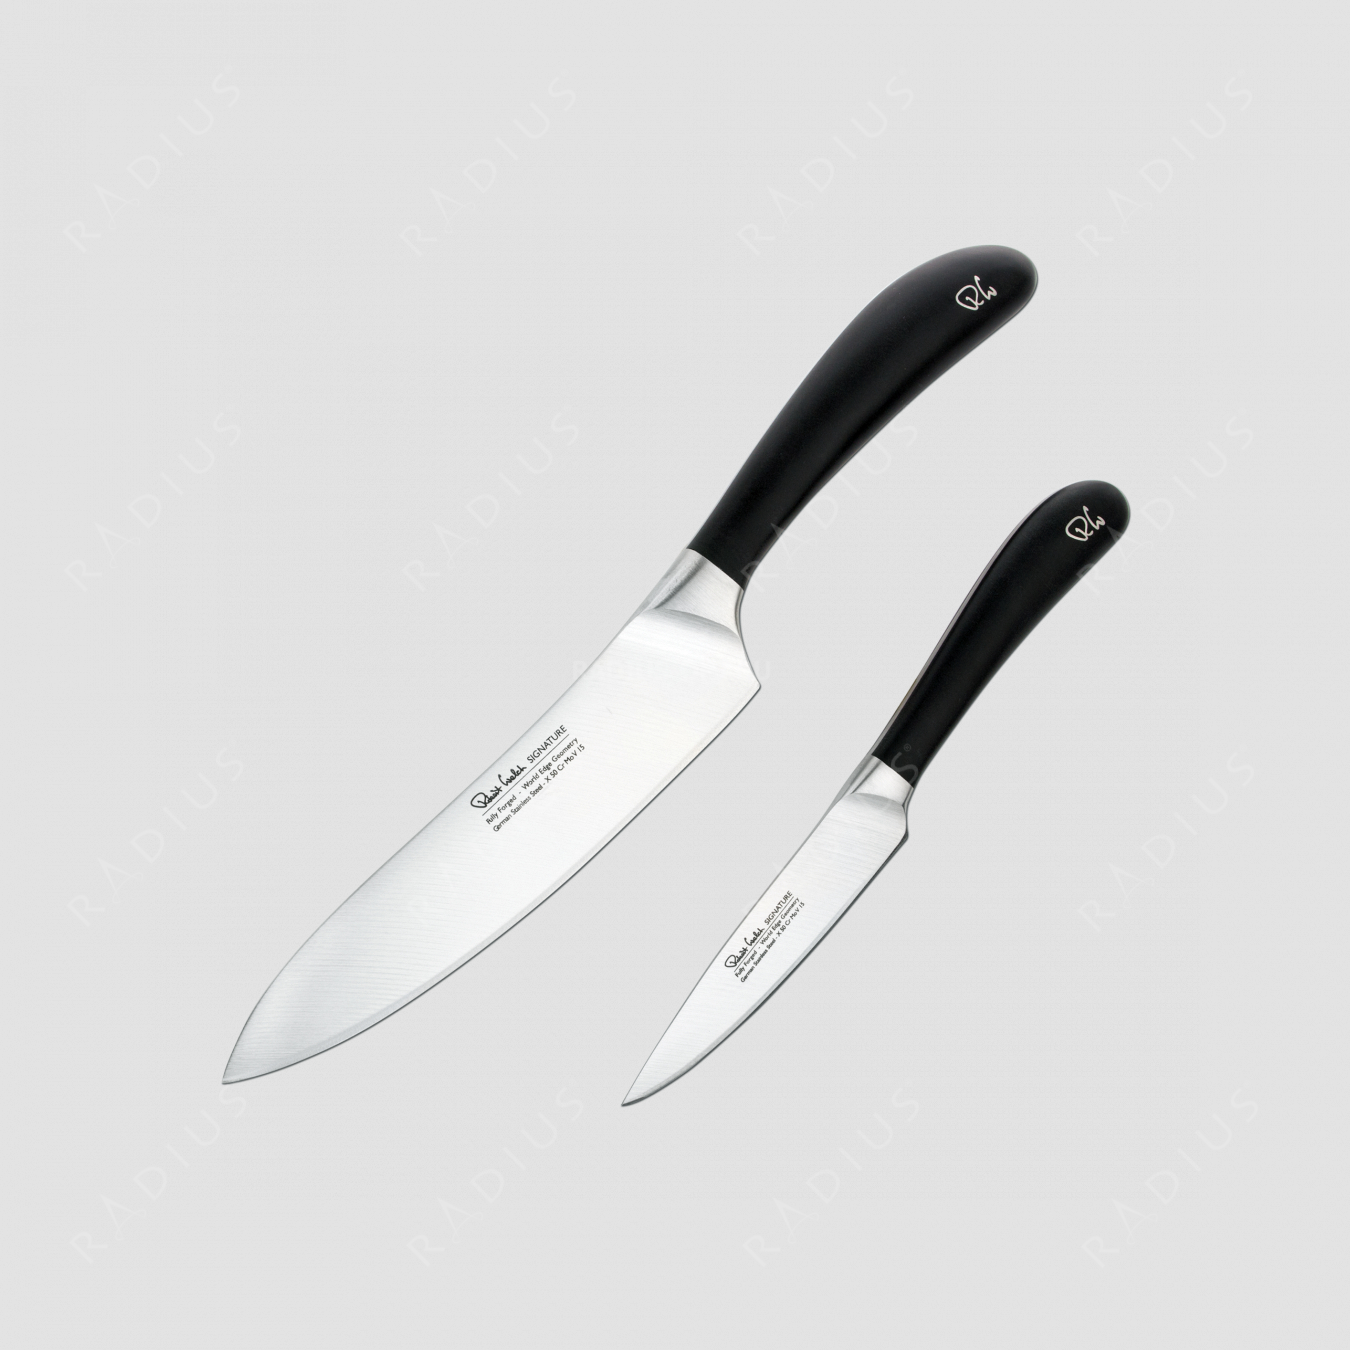 Набор кухонных ножей 2 штуки, SIGNATURE, серия Promotion, ROBERT WELCH, Великобритания